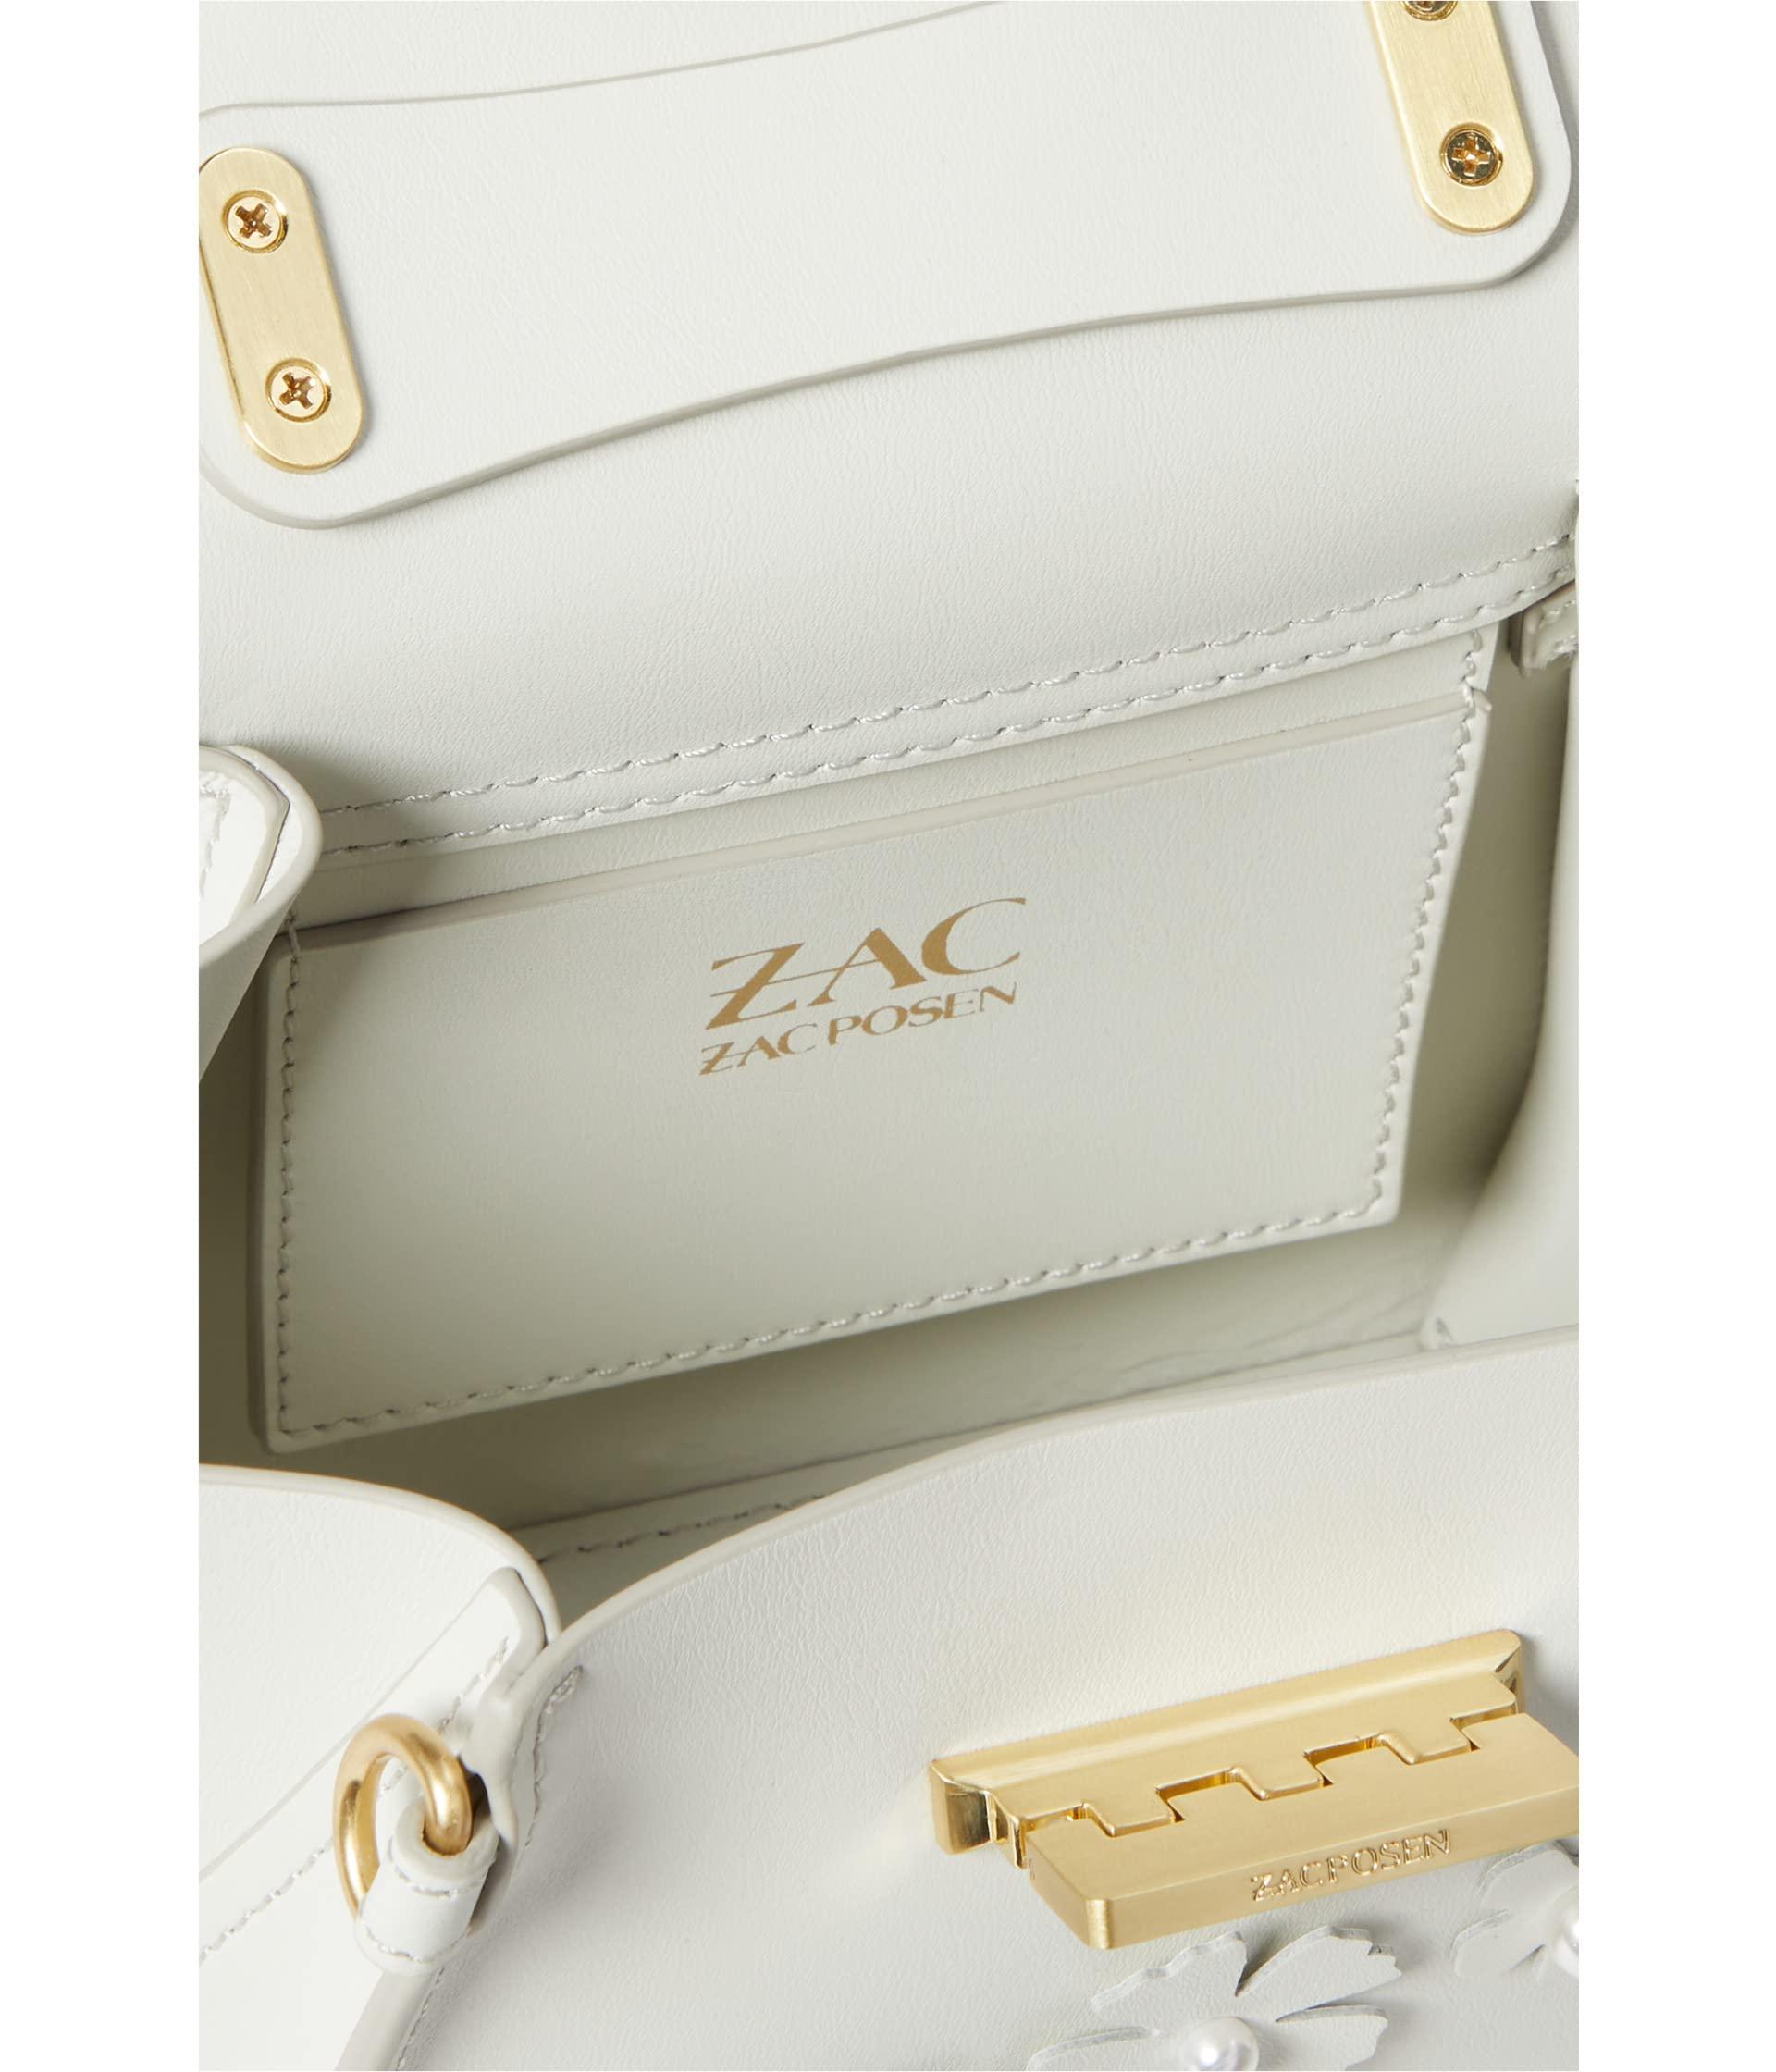 ZAC Zac Posen Eartha Iconic Mini Top Handle Bag